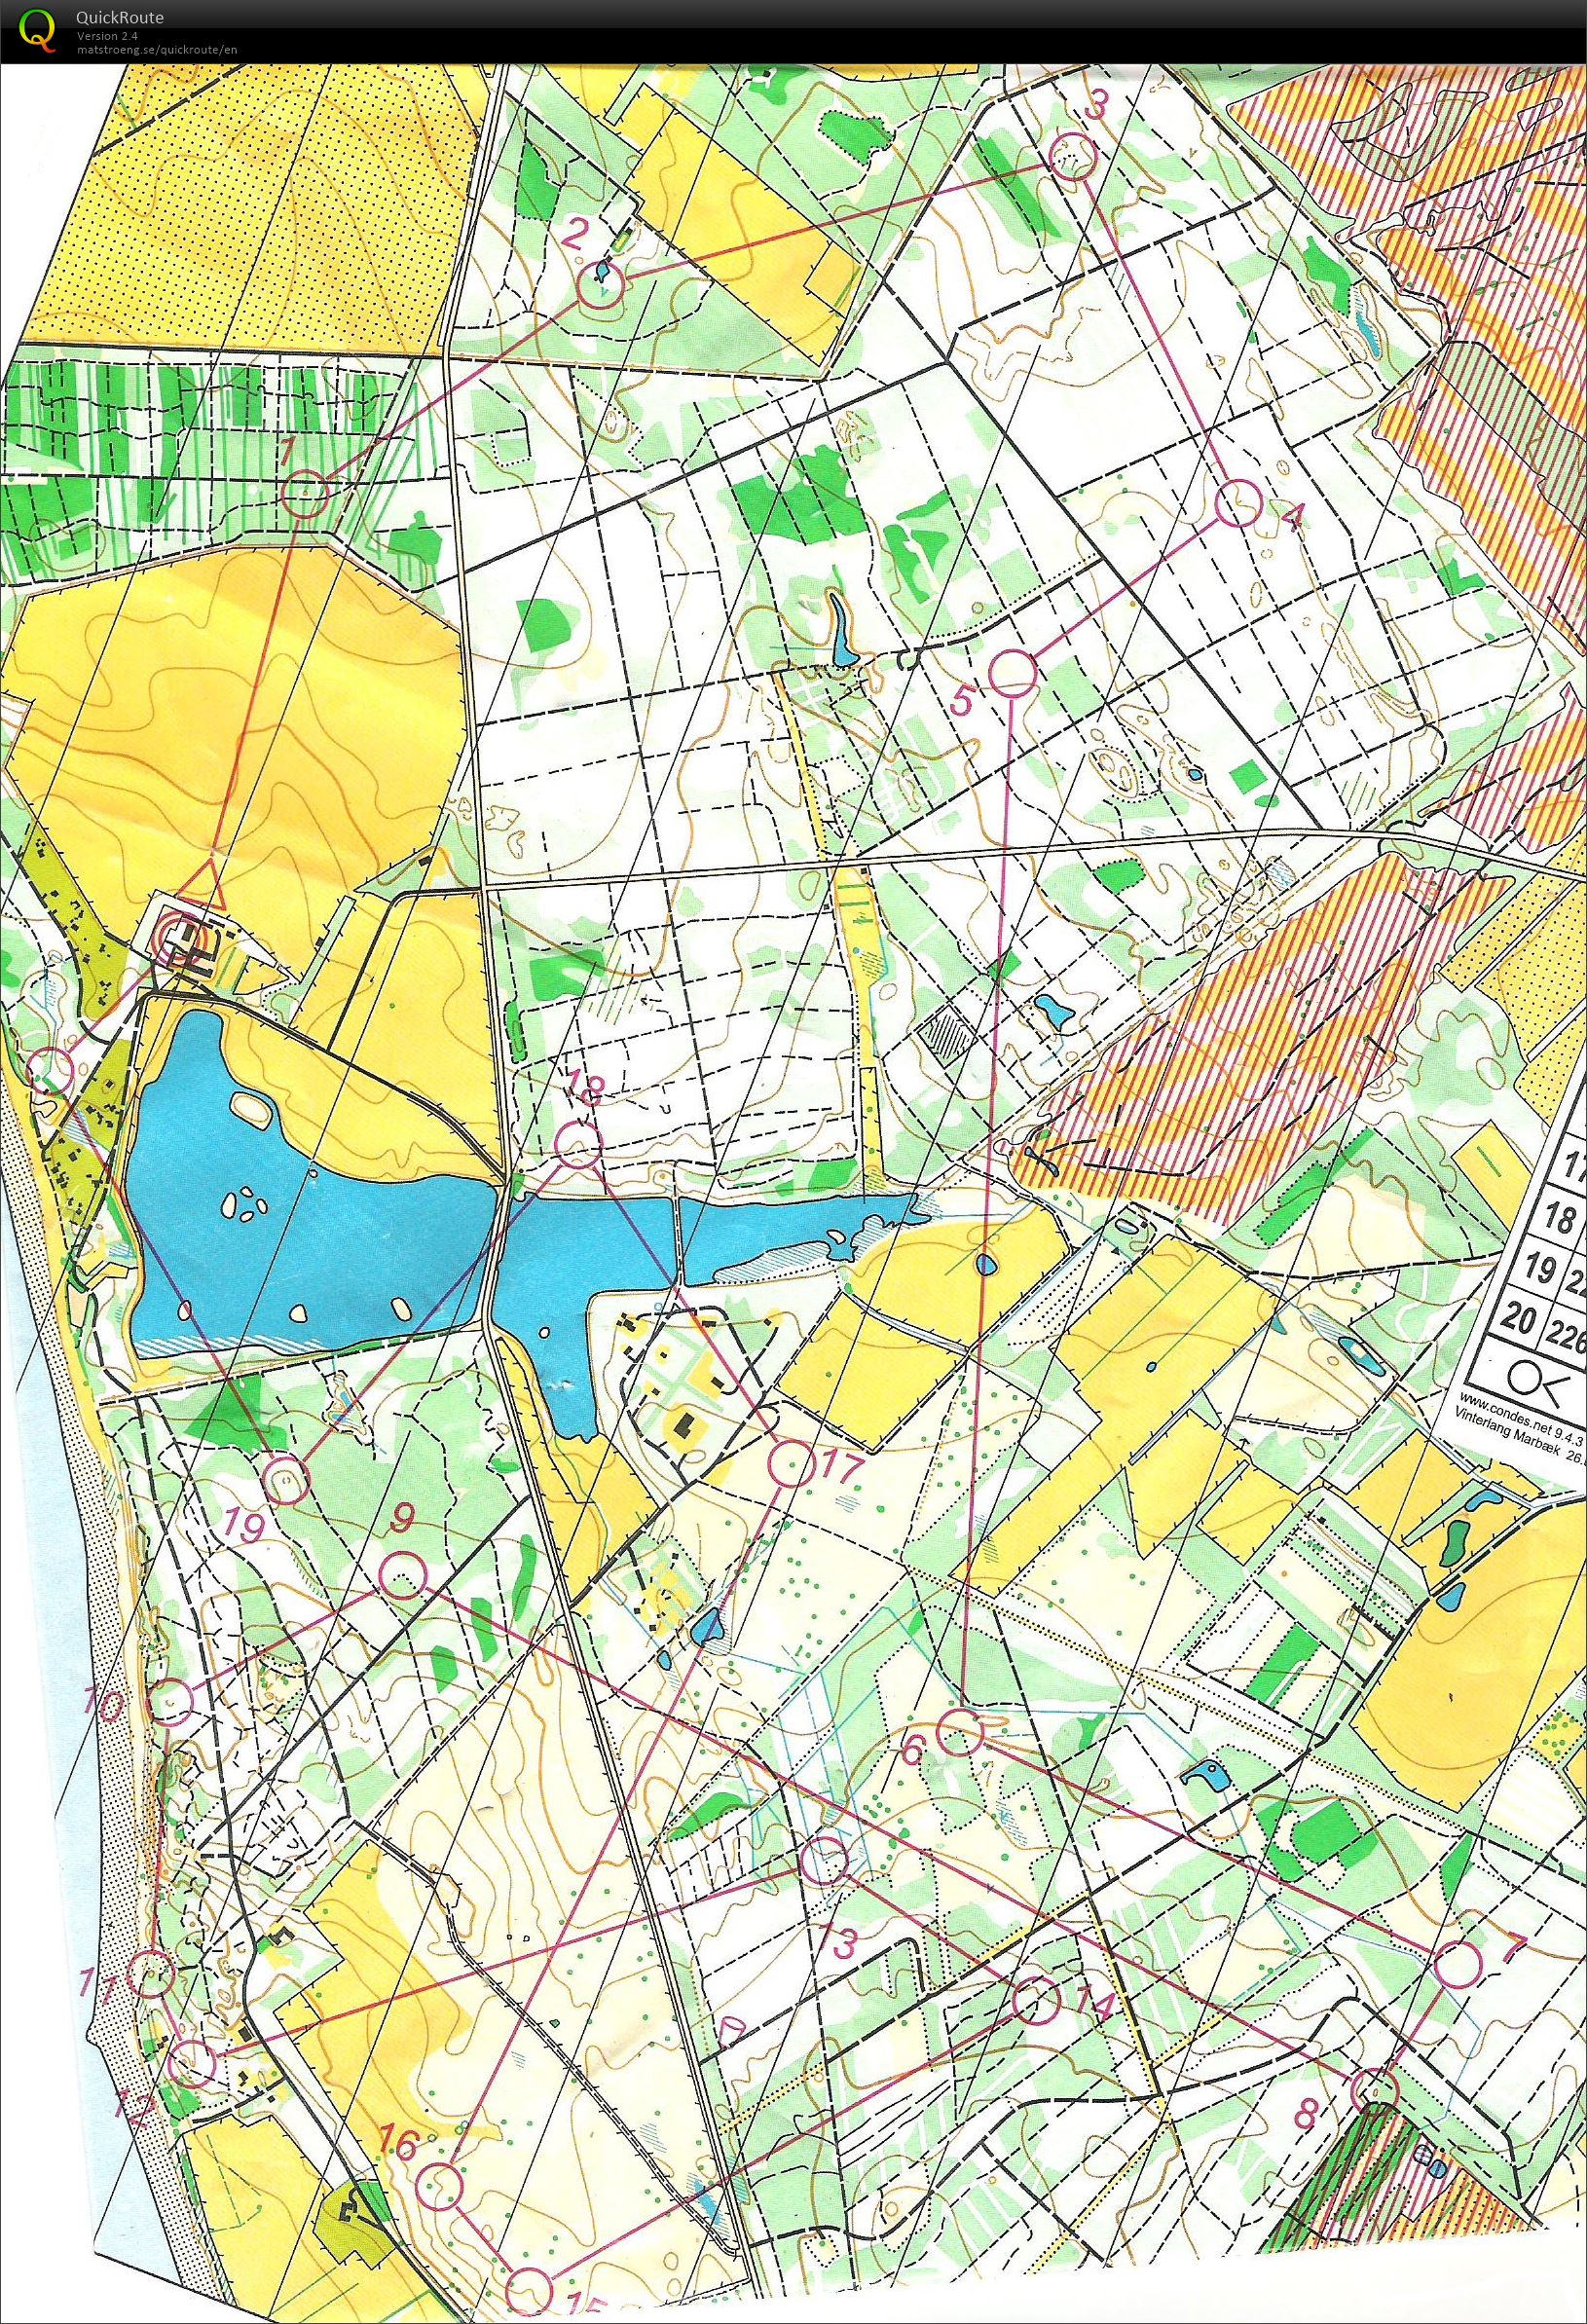 Vinterlangdistance Marbæk Plantage 12.3 km (26.02.2017)